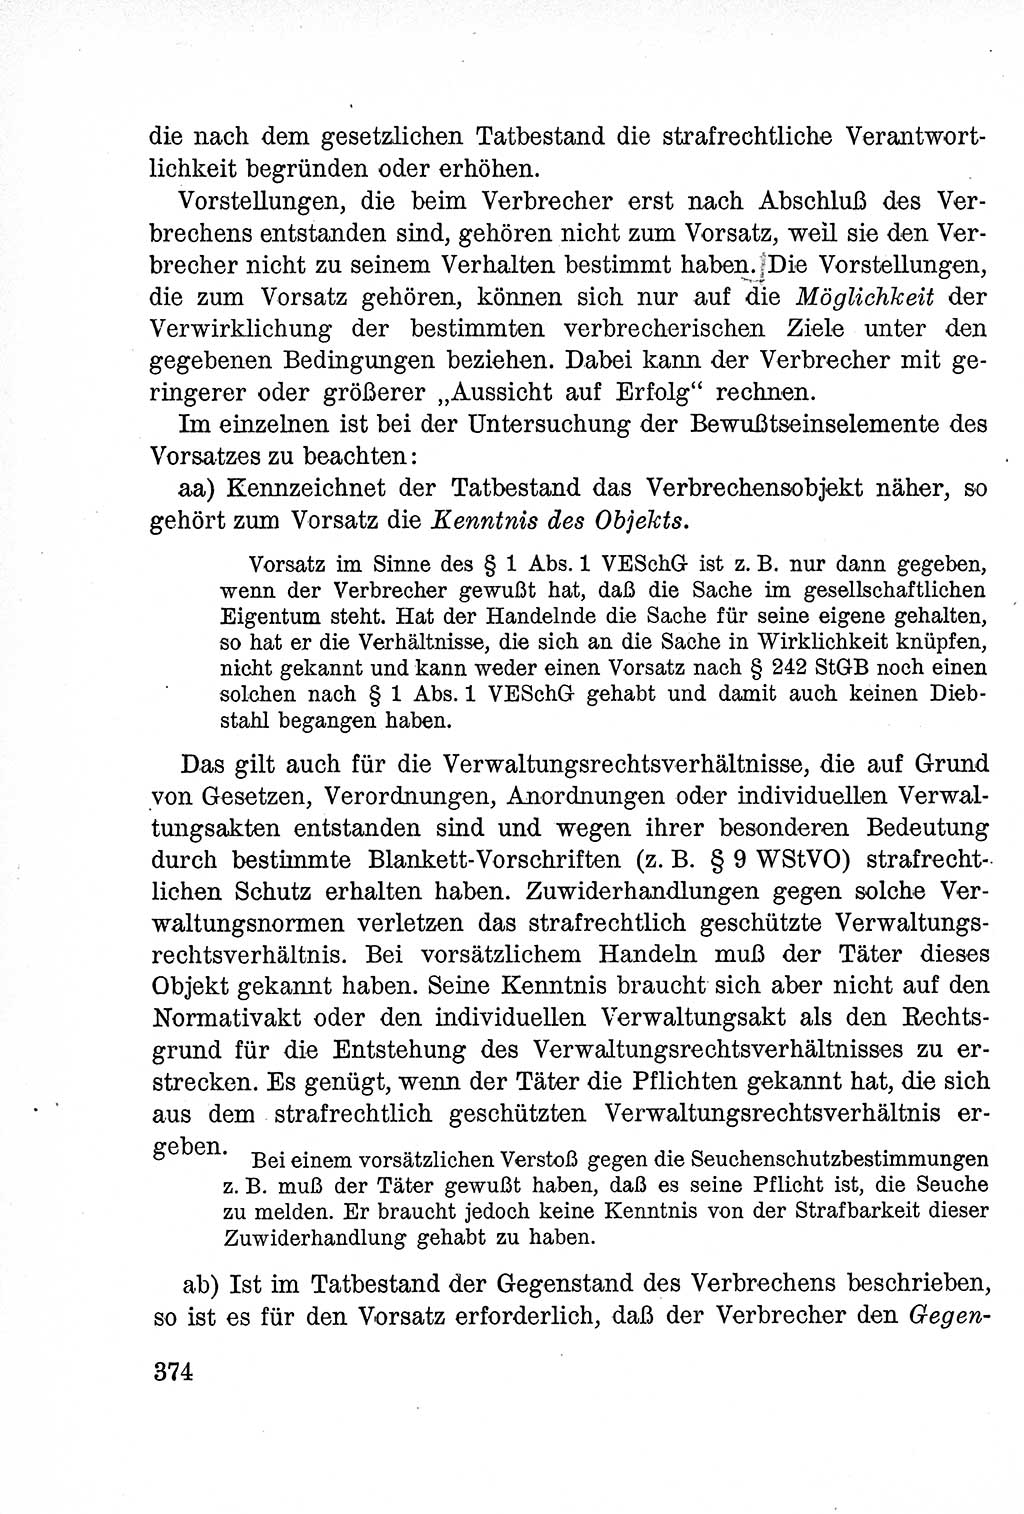 Lehrbuch des Strafrechts der Deutschen Demokratischen Republik (DDR), Allgemeiner Teil 1957, Seite 374 (Lb. Strafr. DDR AT 1957, S. 374)